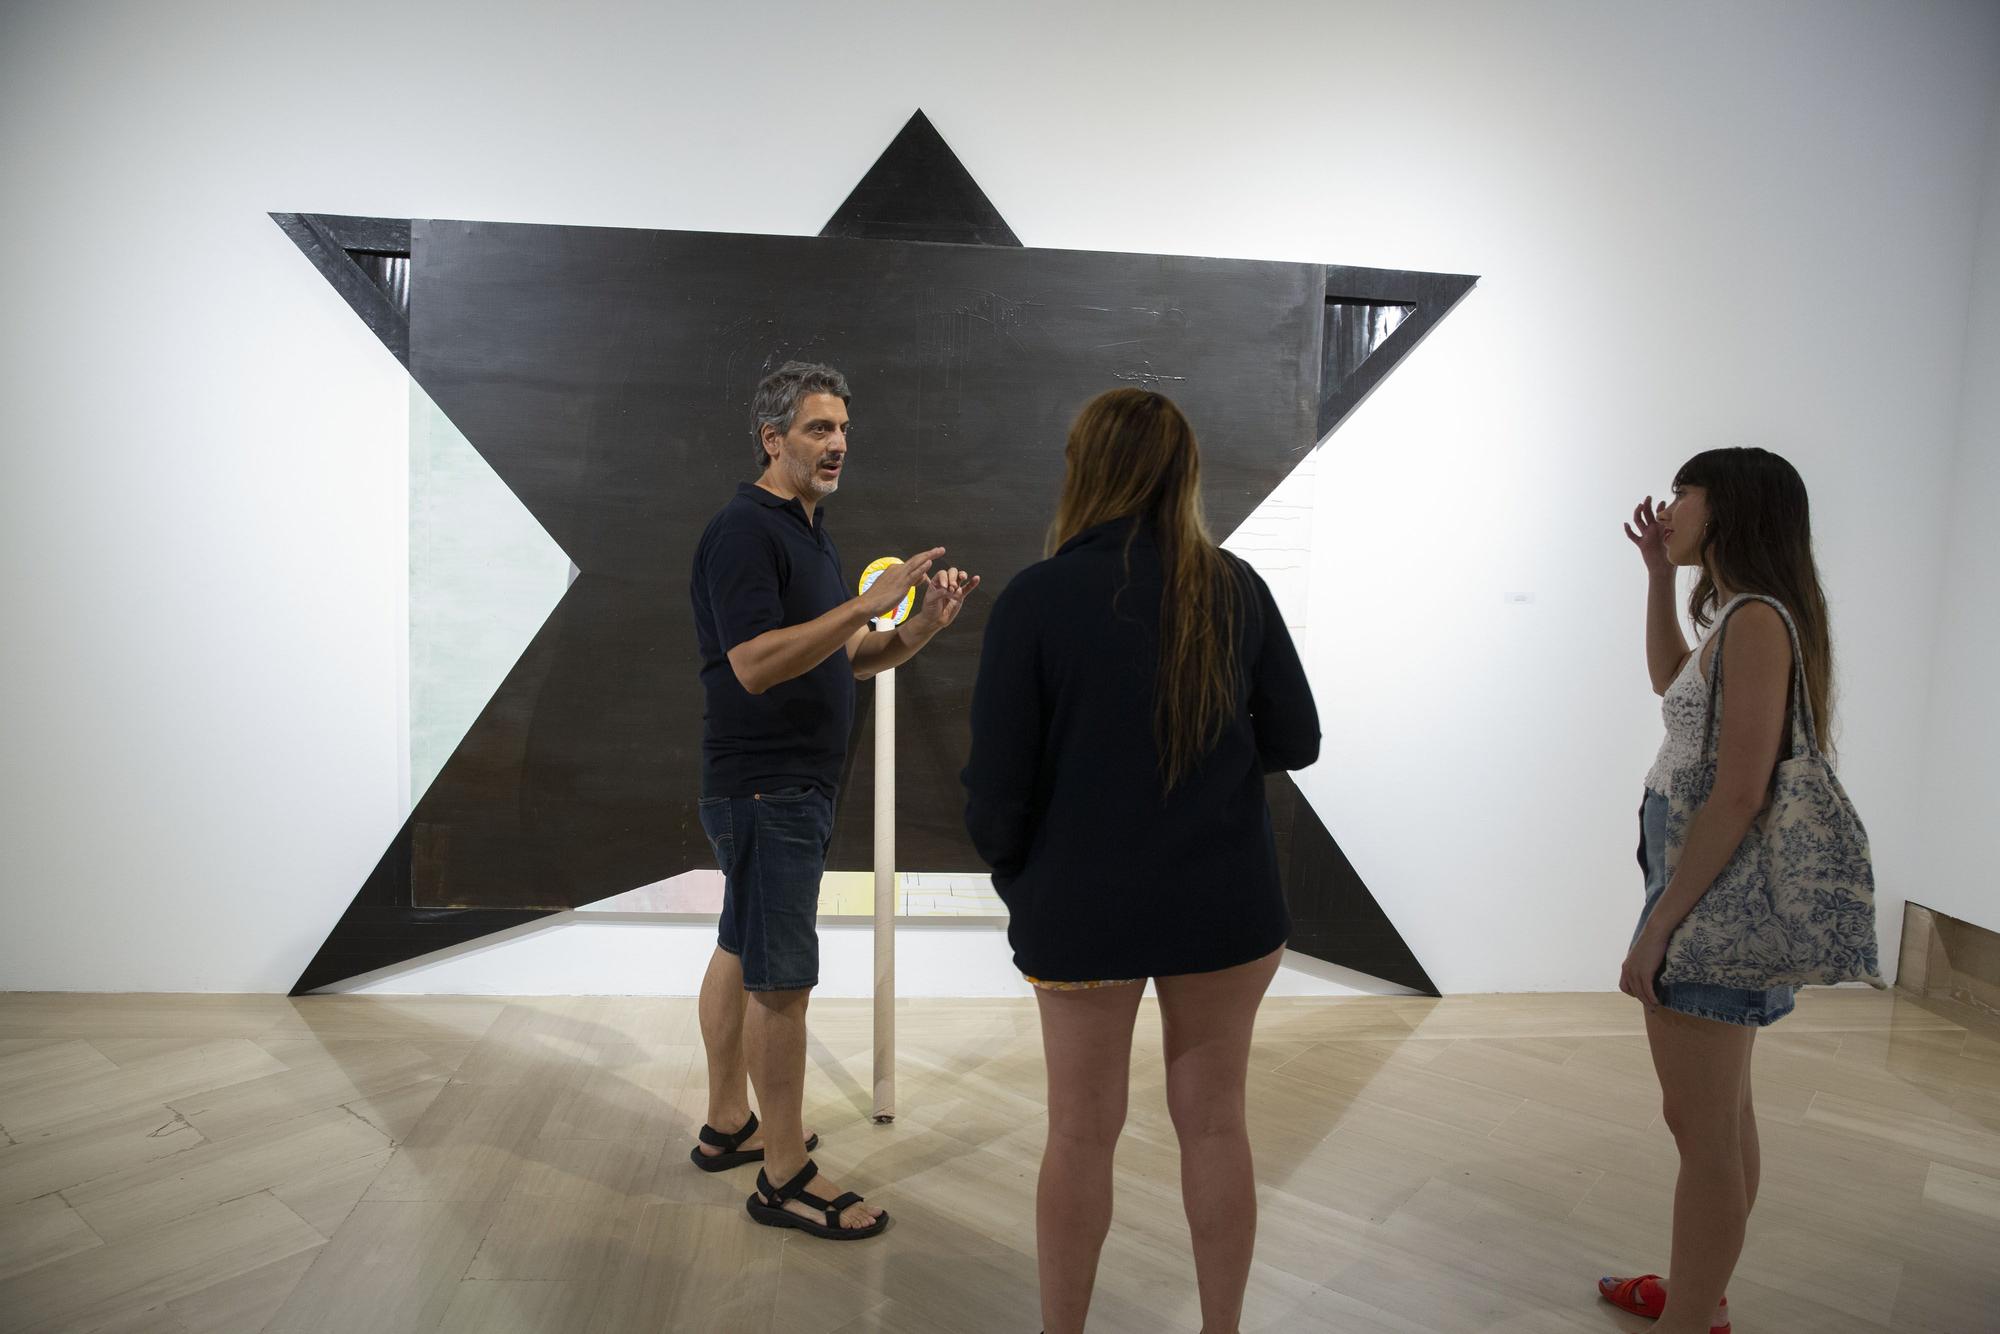 La Lonja expone las primeras adquisiciones municipales de arte contemporáneo en 20 años